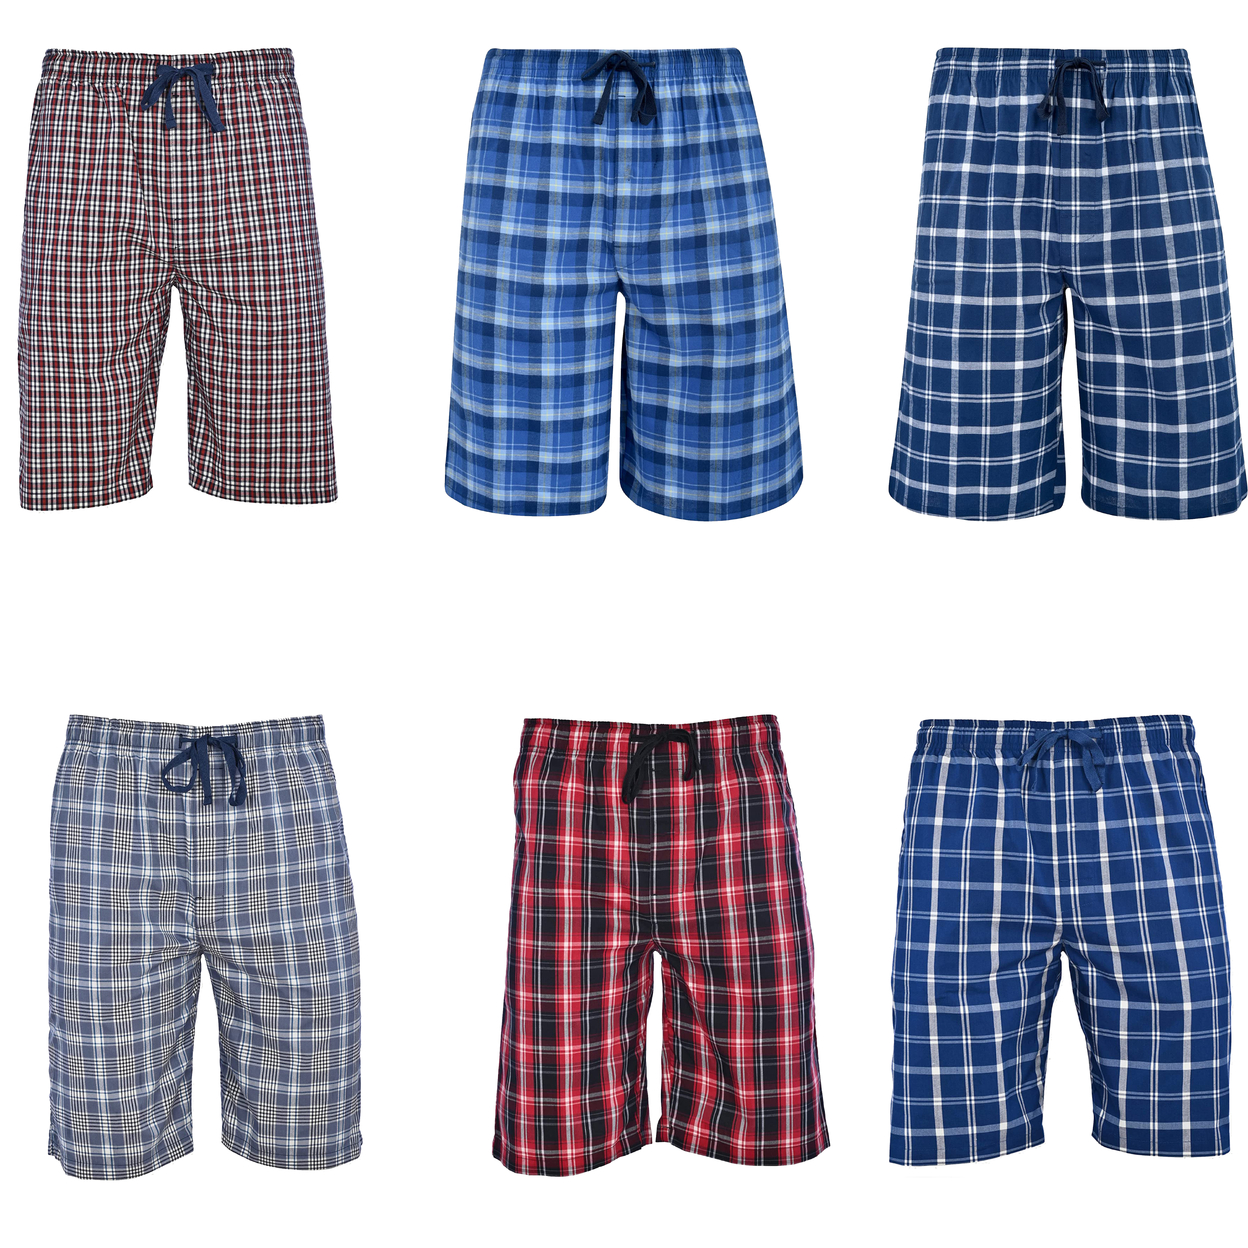 Men's Ultra-Soft Plaid Lounge Pajama Sleep Wear Shorts - Blue, X-large